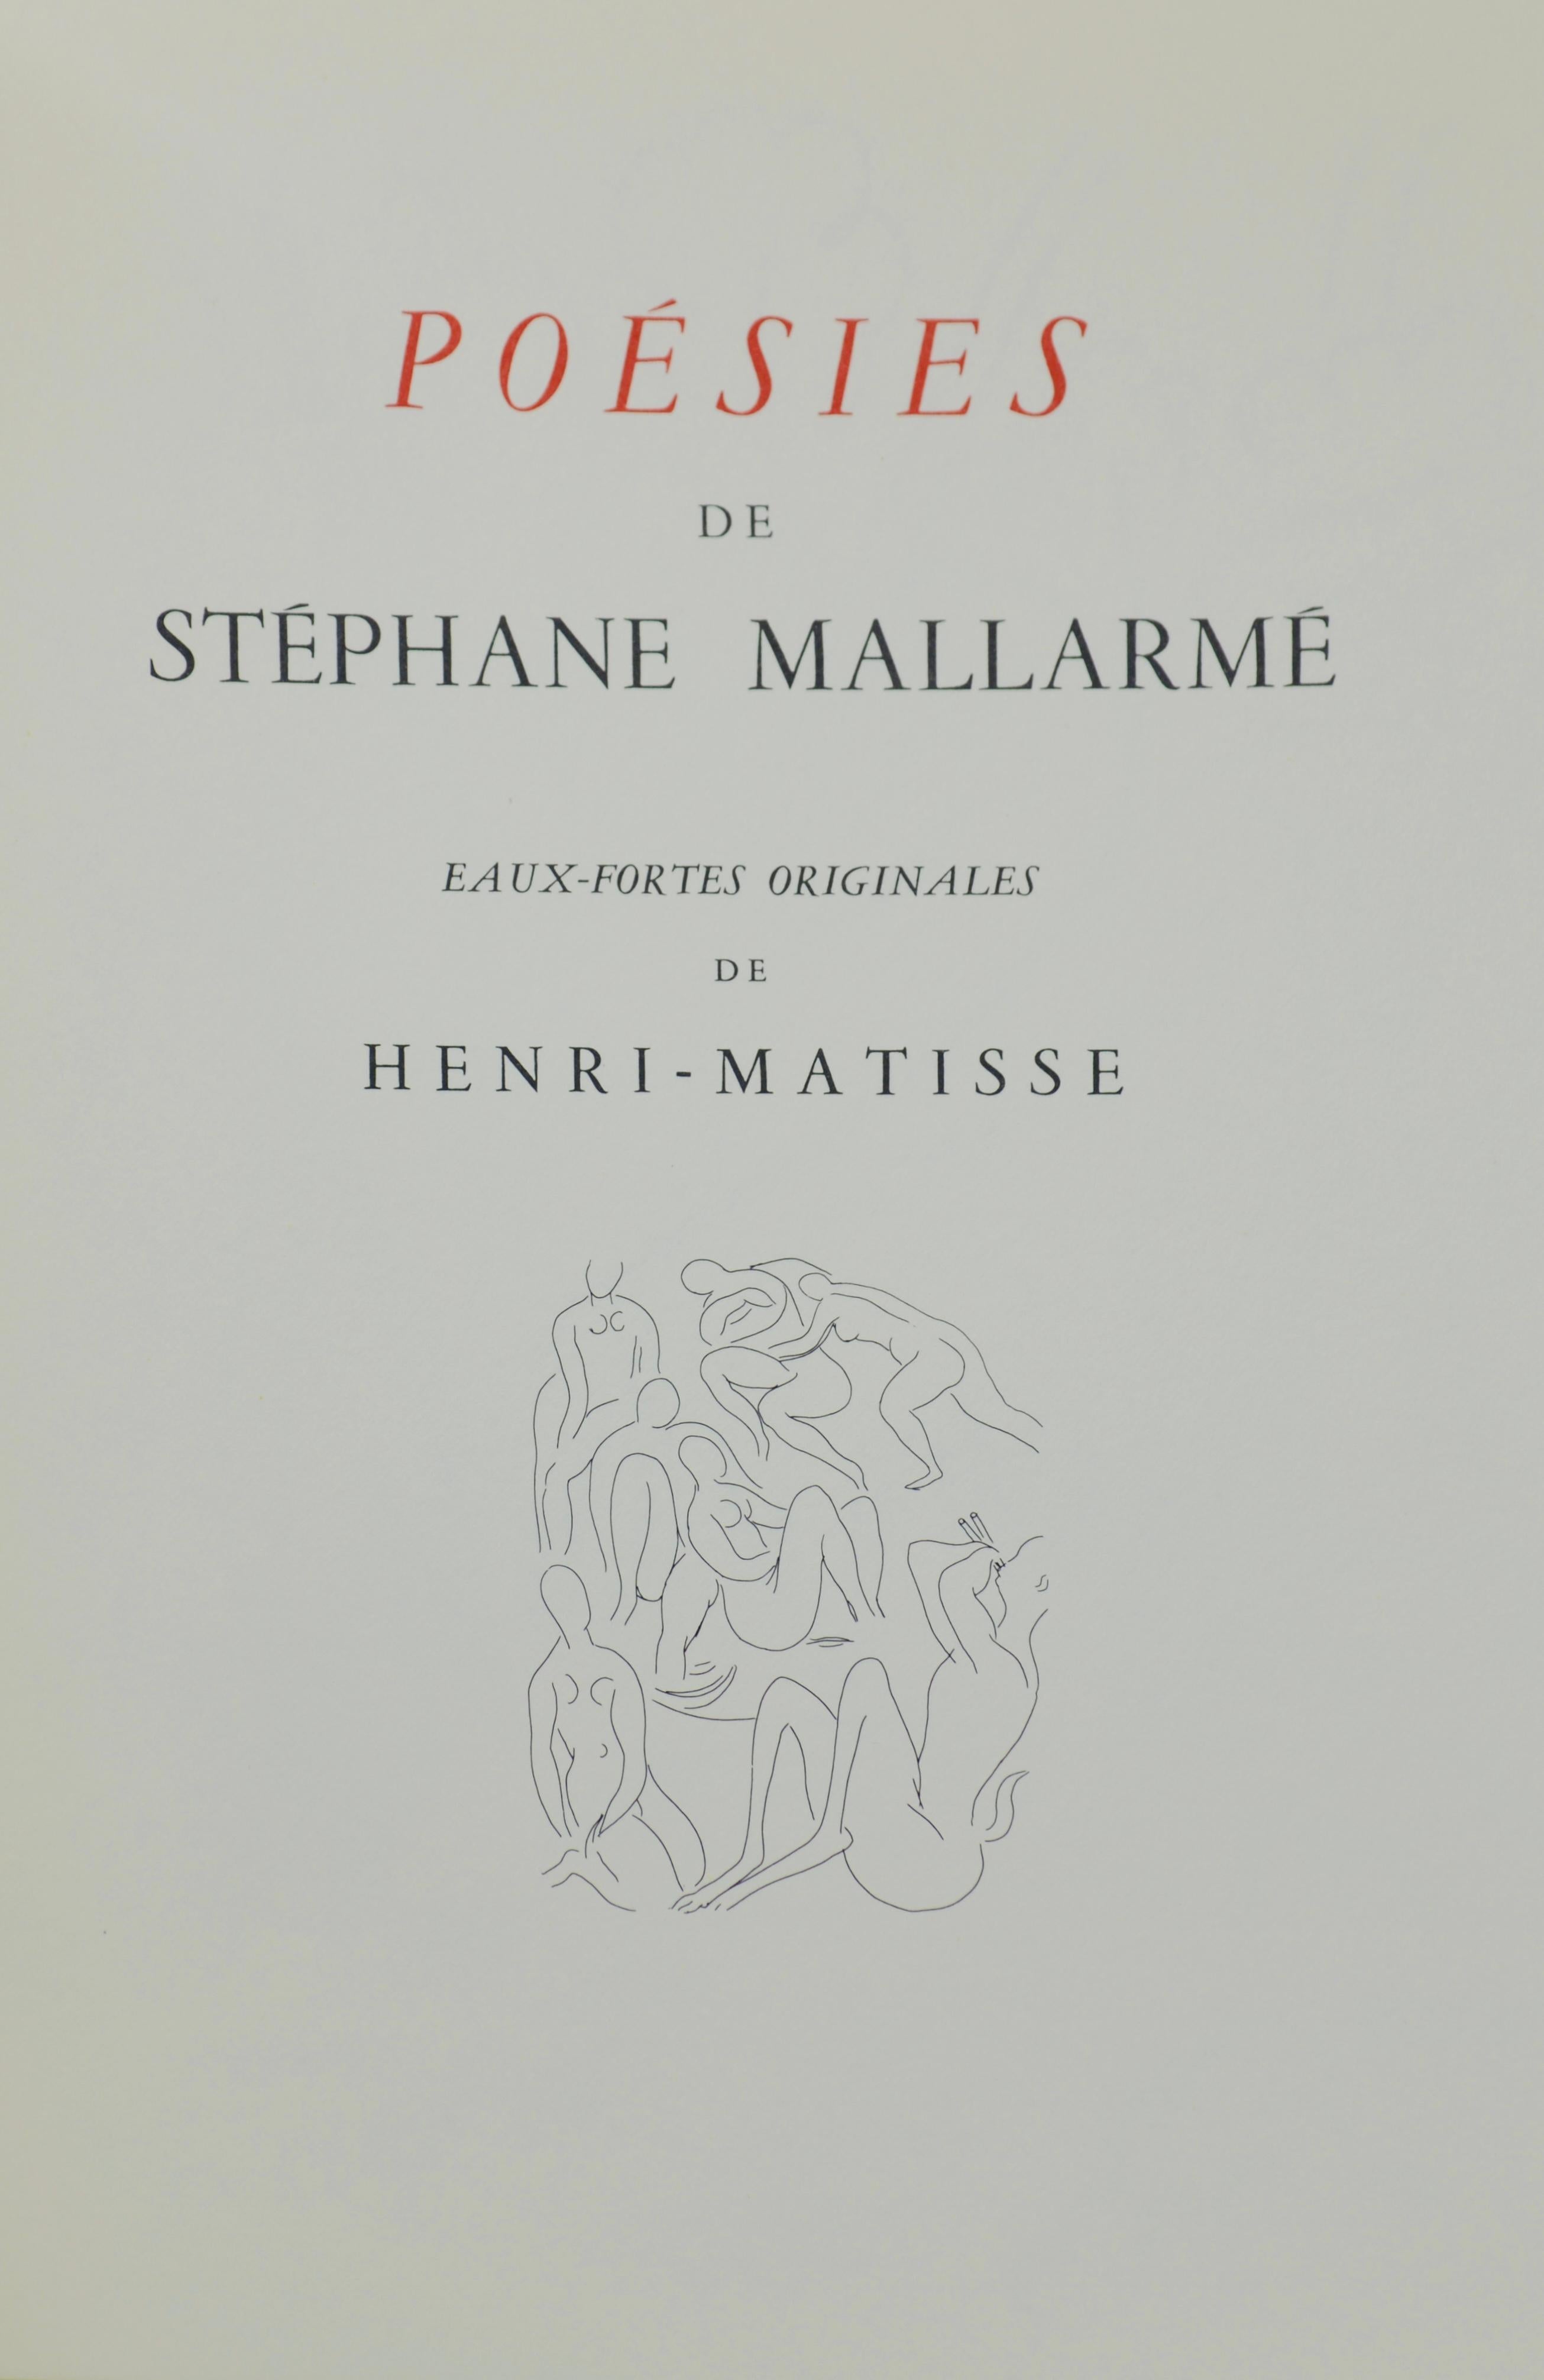 Matisse, Tristesse d'été (Summer Melancholy), Poésies (after) For Sale 1